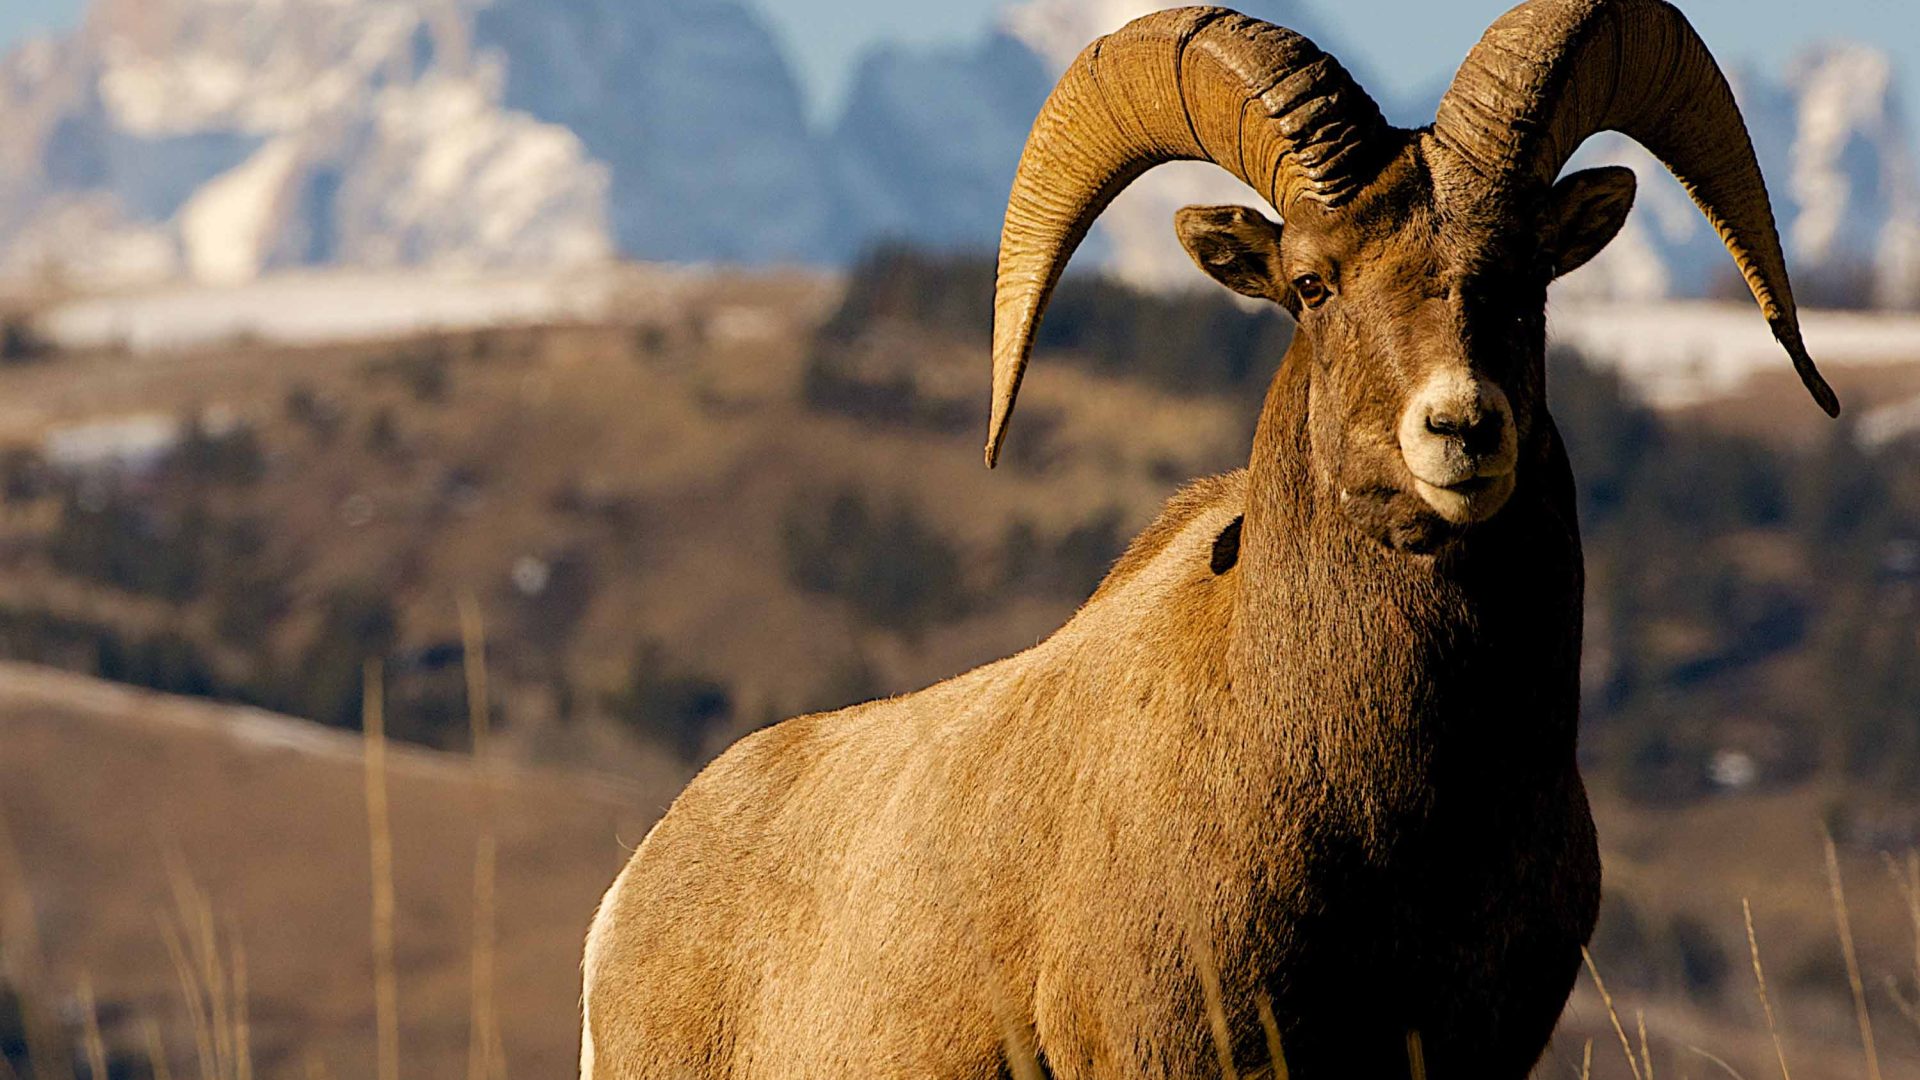 A bighorn sheep against the mountains.